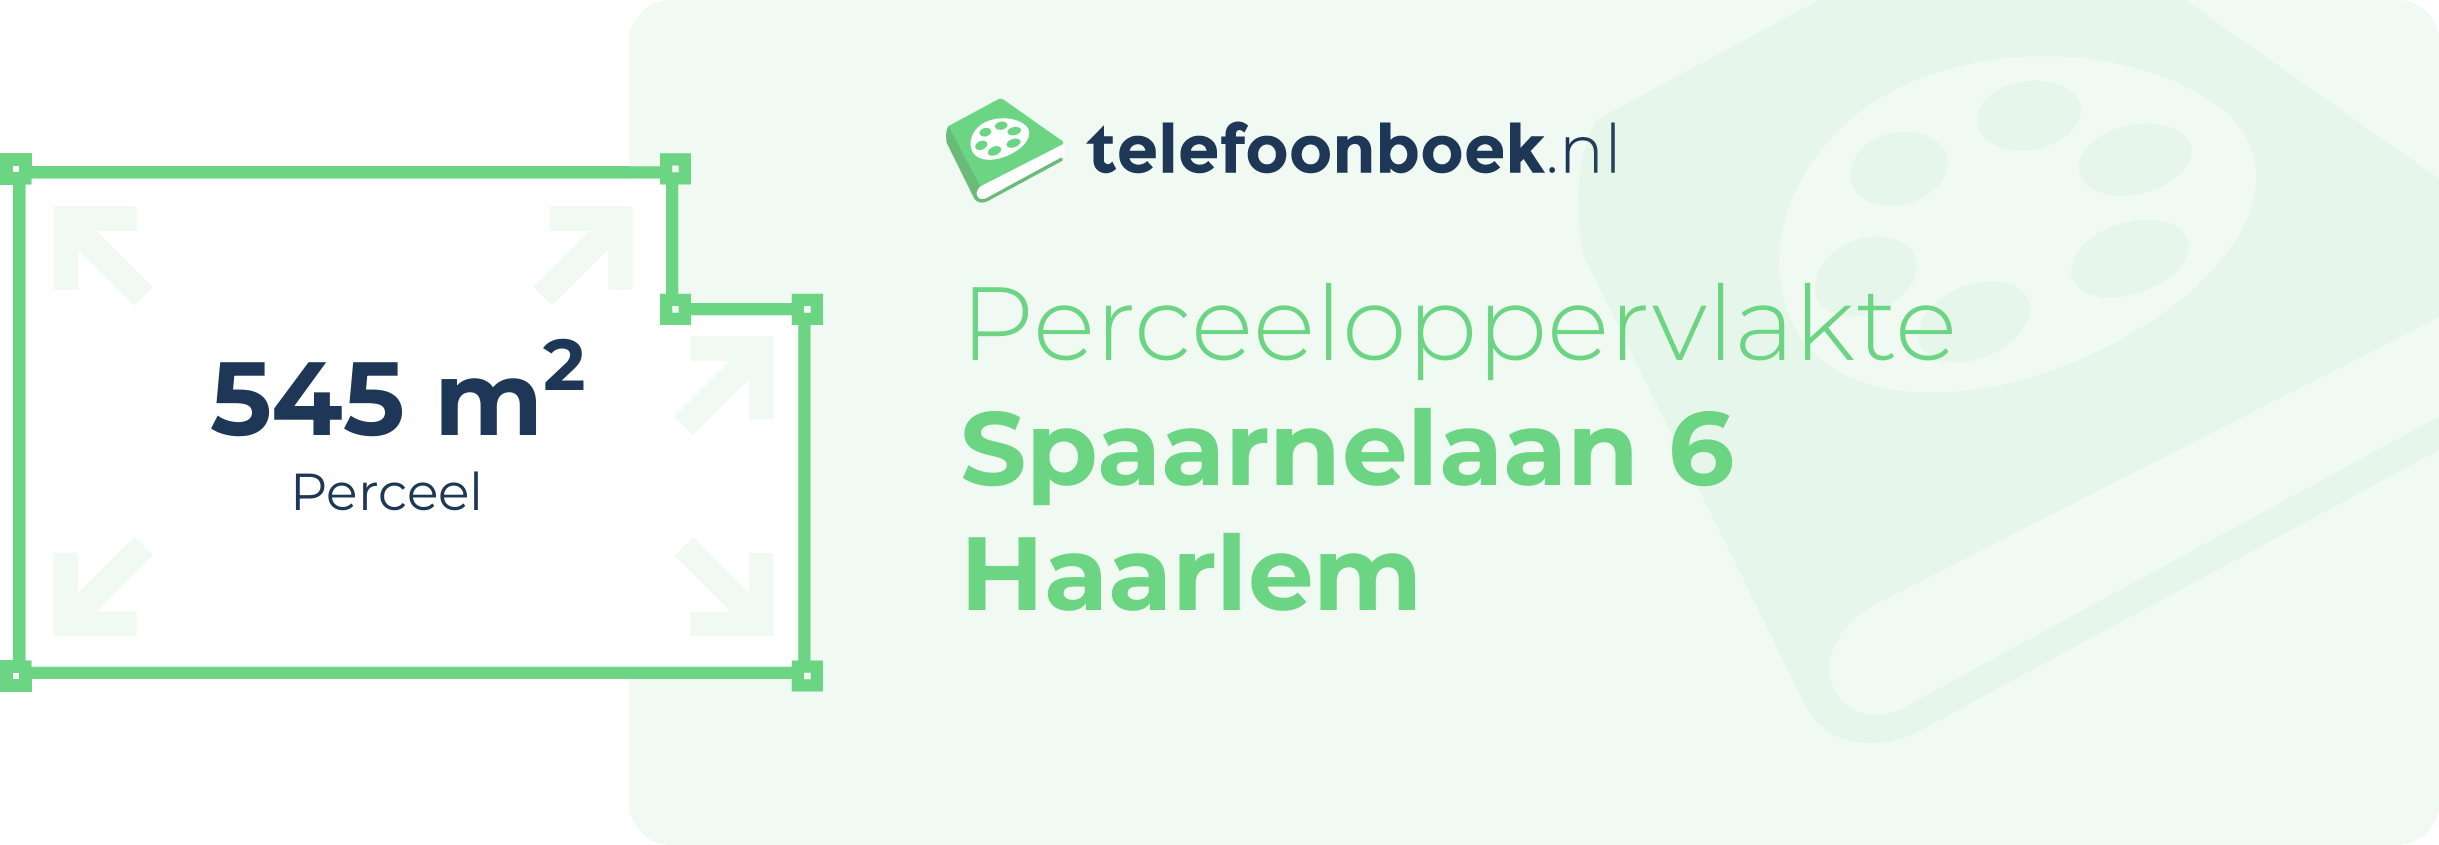 Perceeloppervlakte Spaarnelaan 6 Haarlem